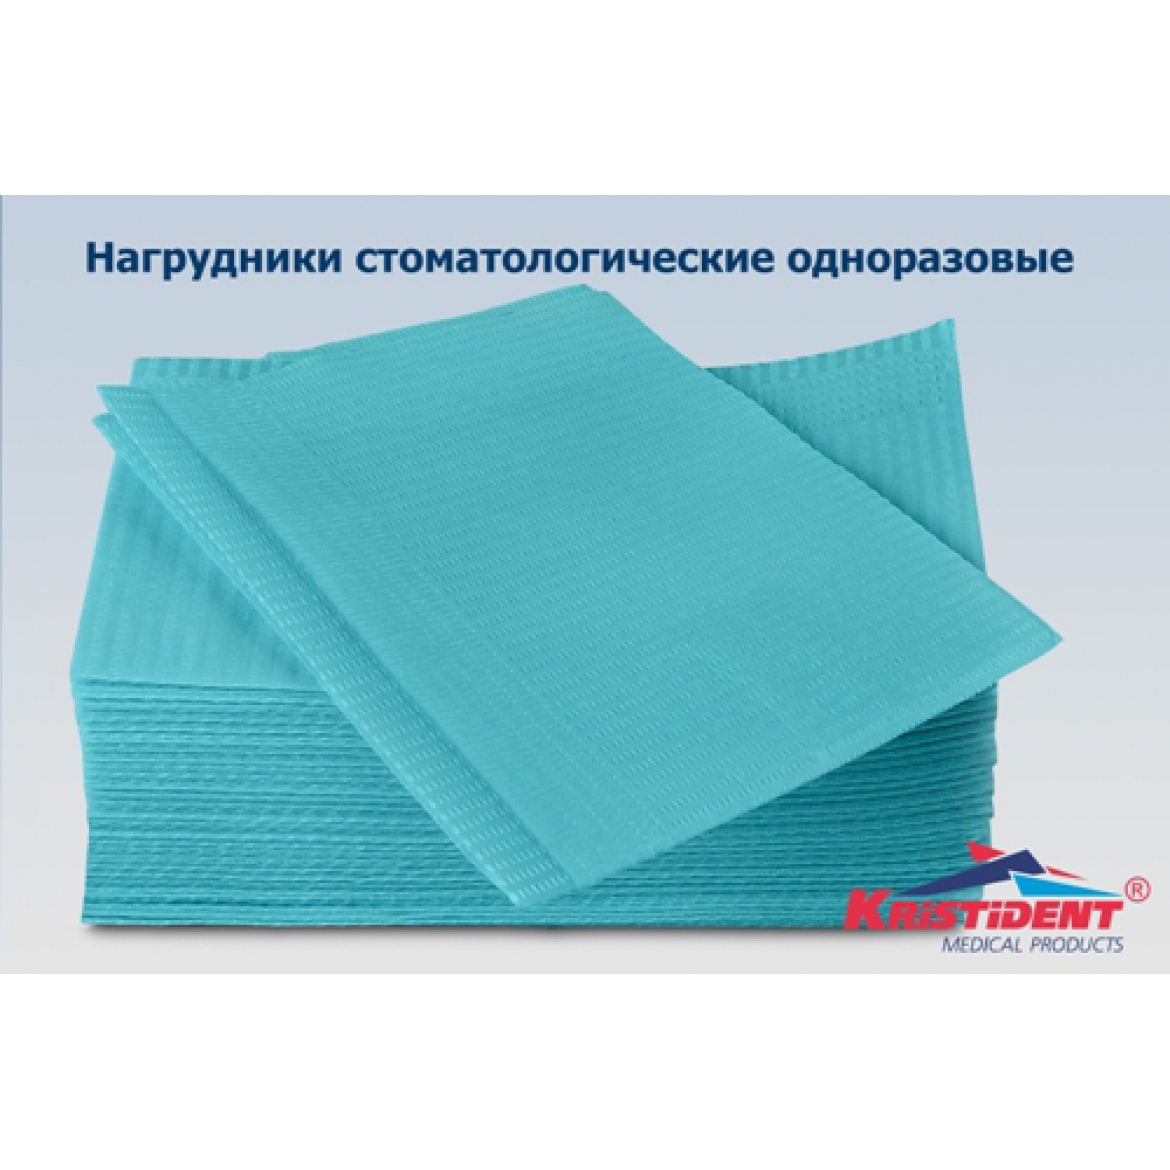 Нагрудники стоматологические «КРИСТИДЕНТ», цвет голубой, 500 шт. коробка.